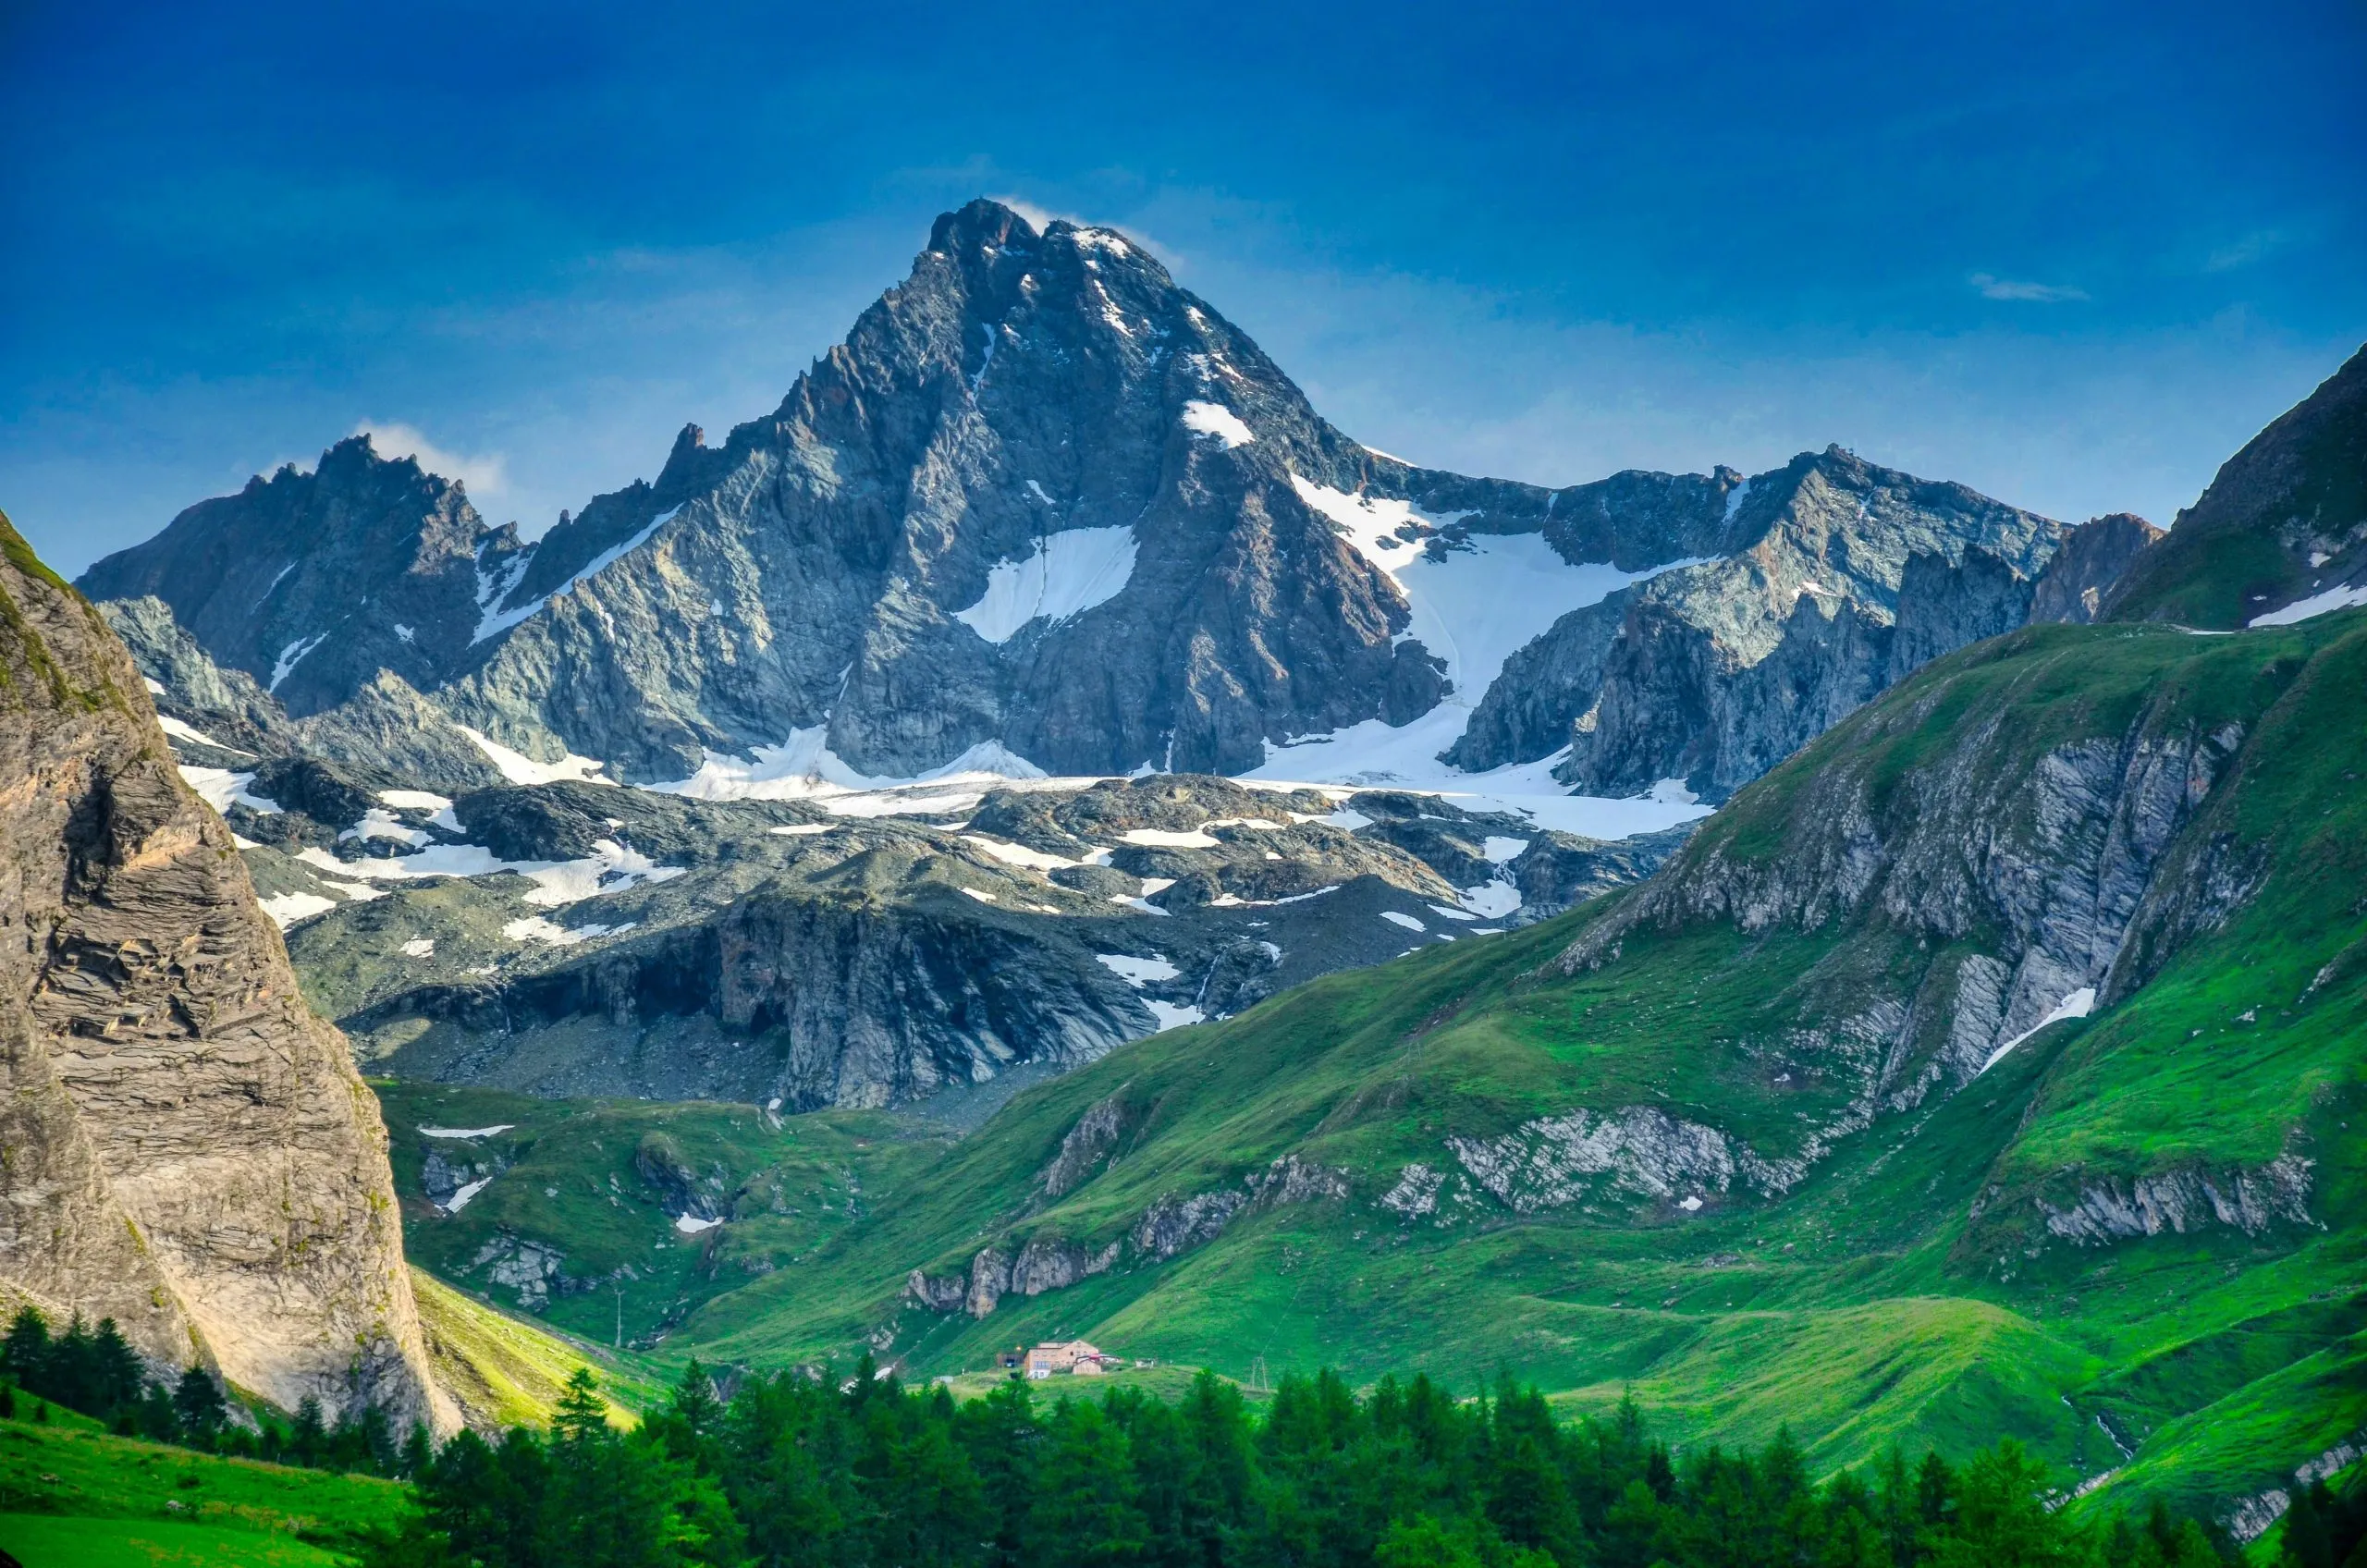 höchster Berg Österreichs, Großglocker